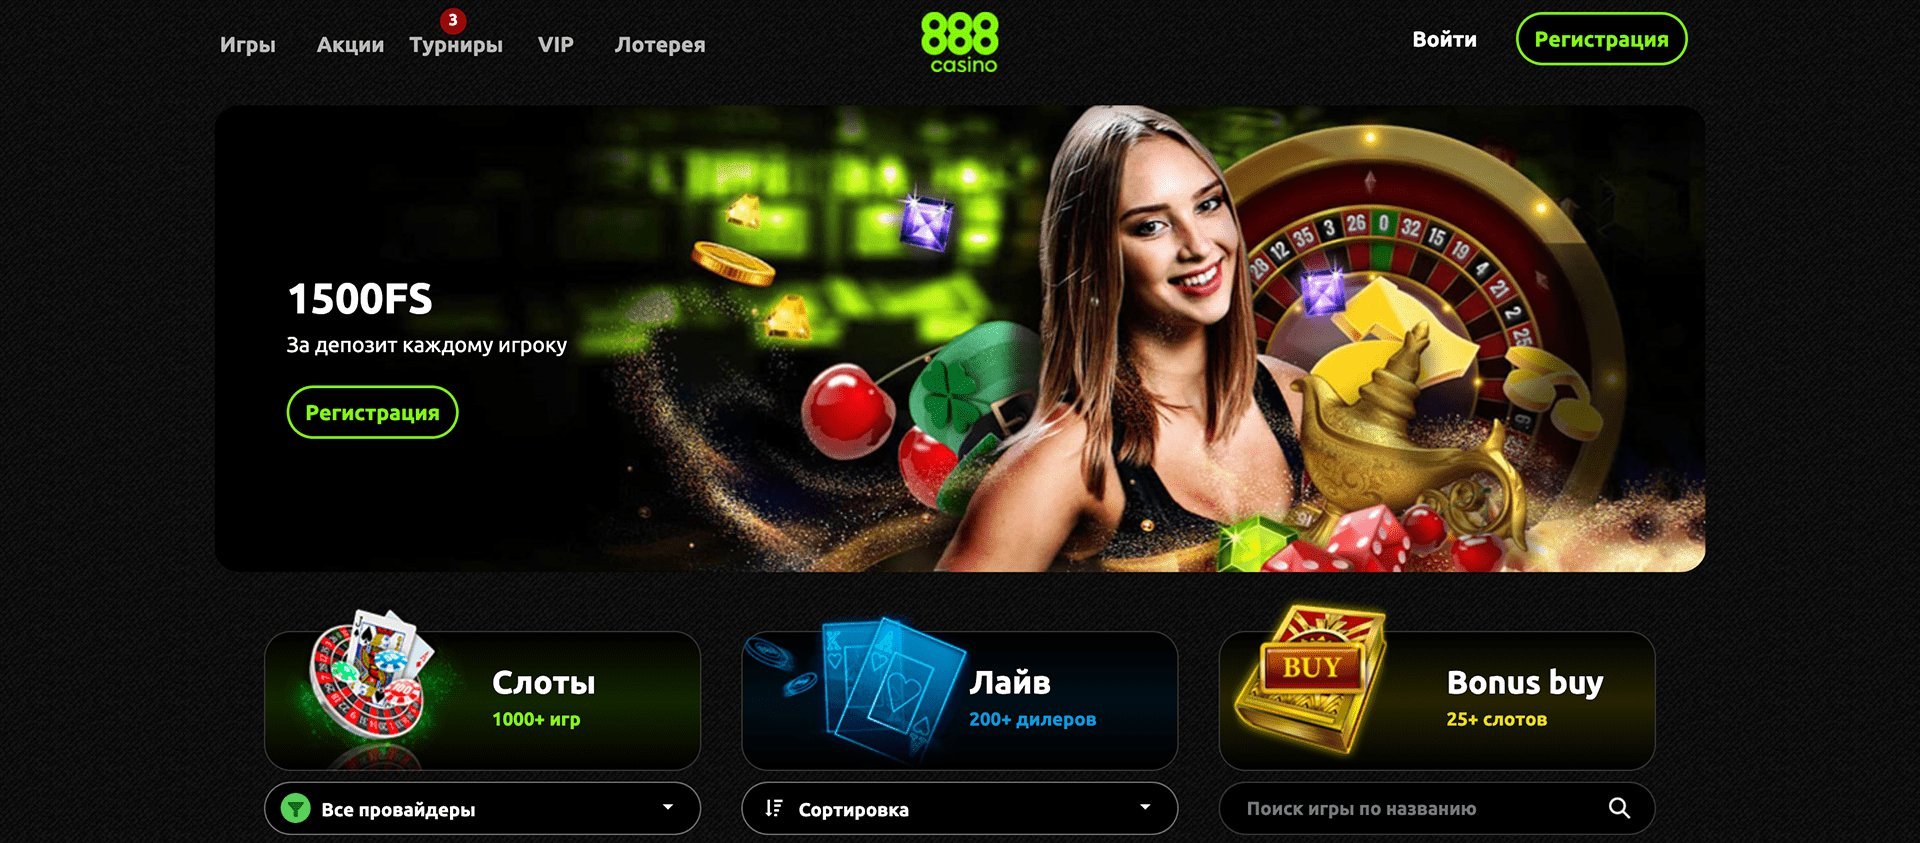 888 casino регистрация 888casino das. 888 Казино. Форум казино.